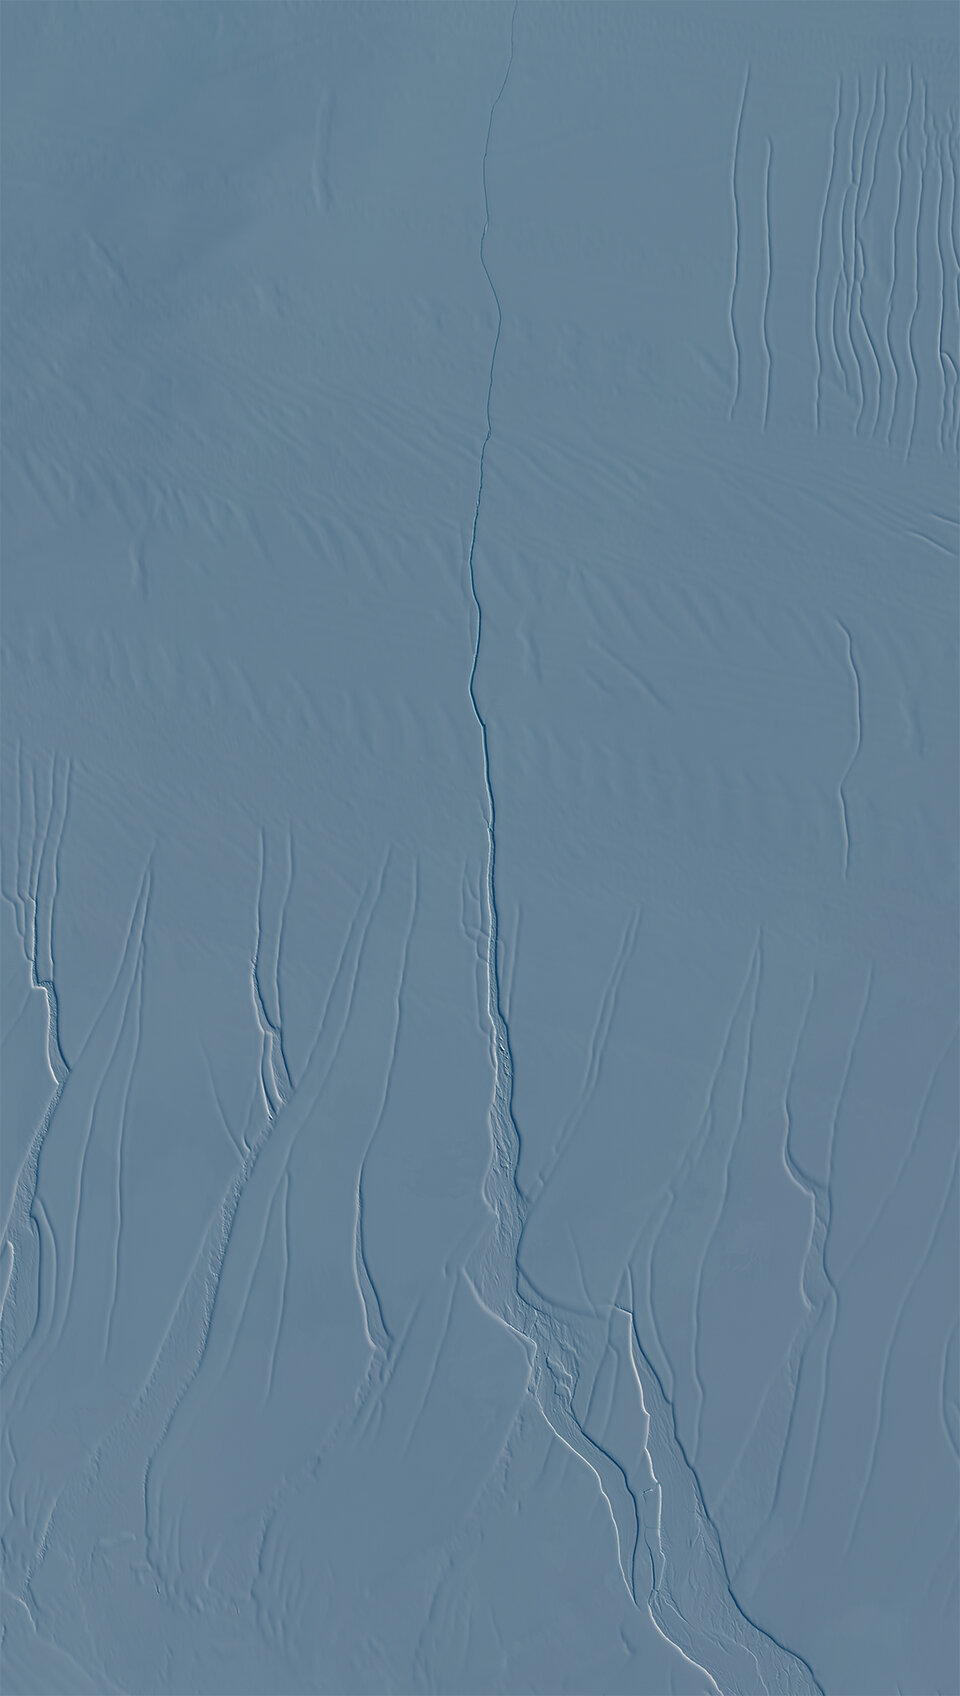 Riss im Eisschelf Larsen C, aufgenommen von Sentinel-2A 